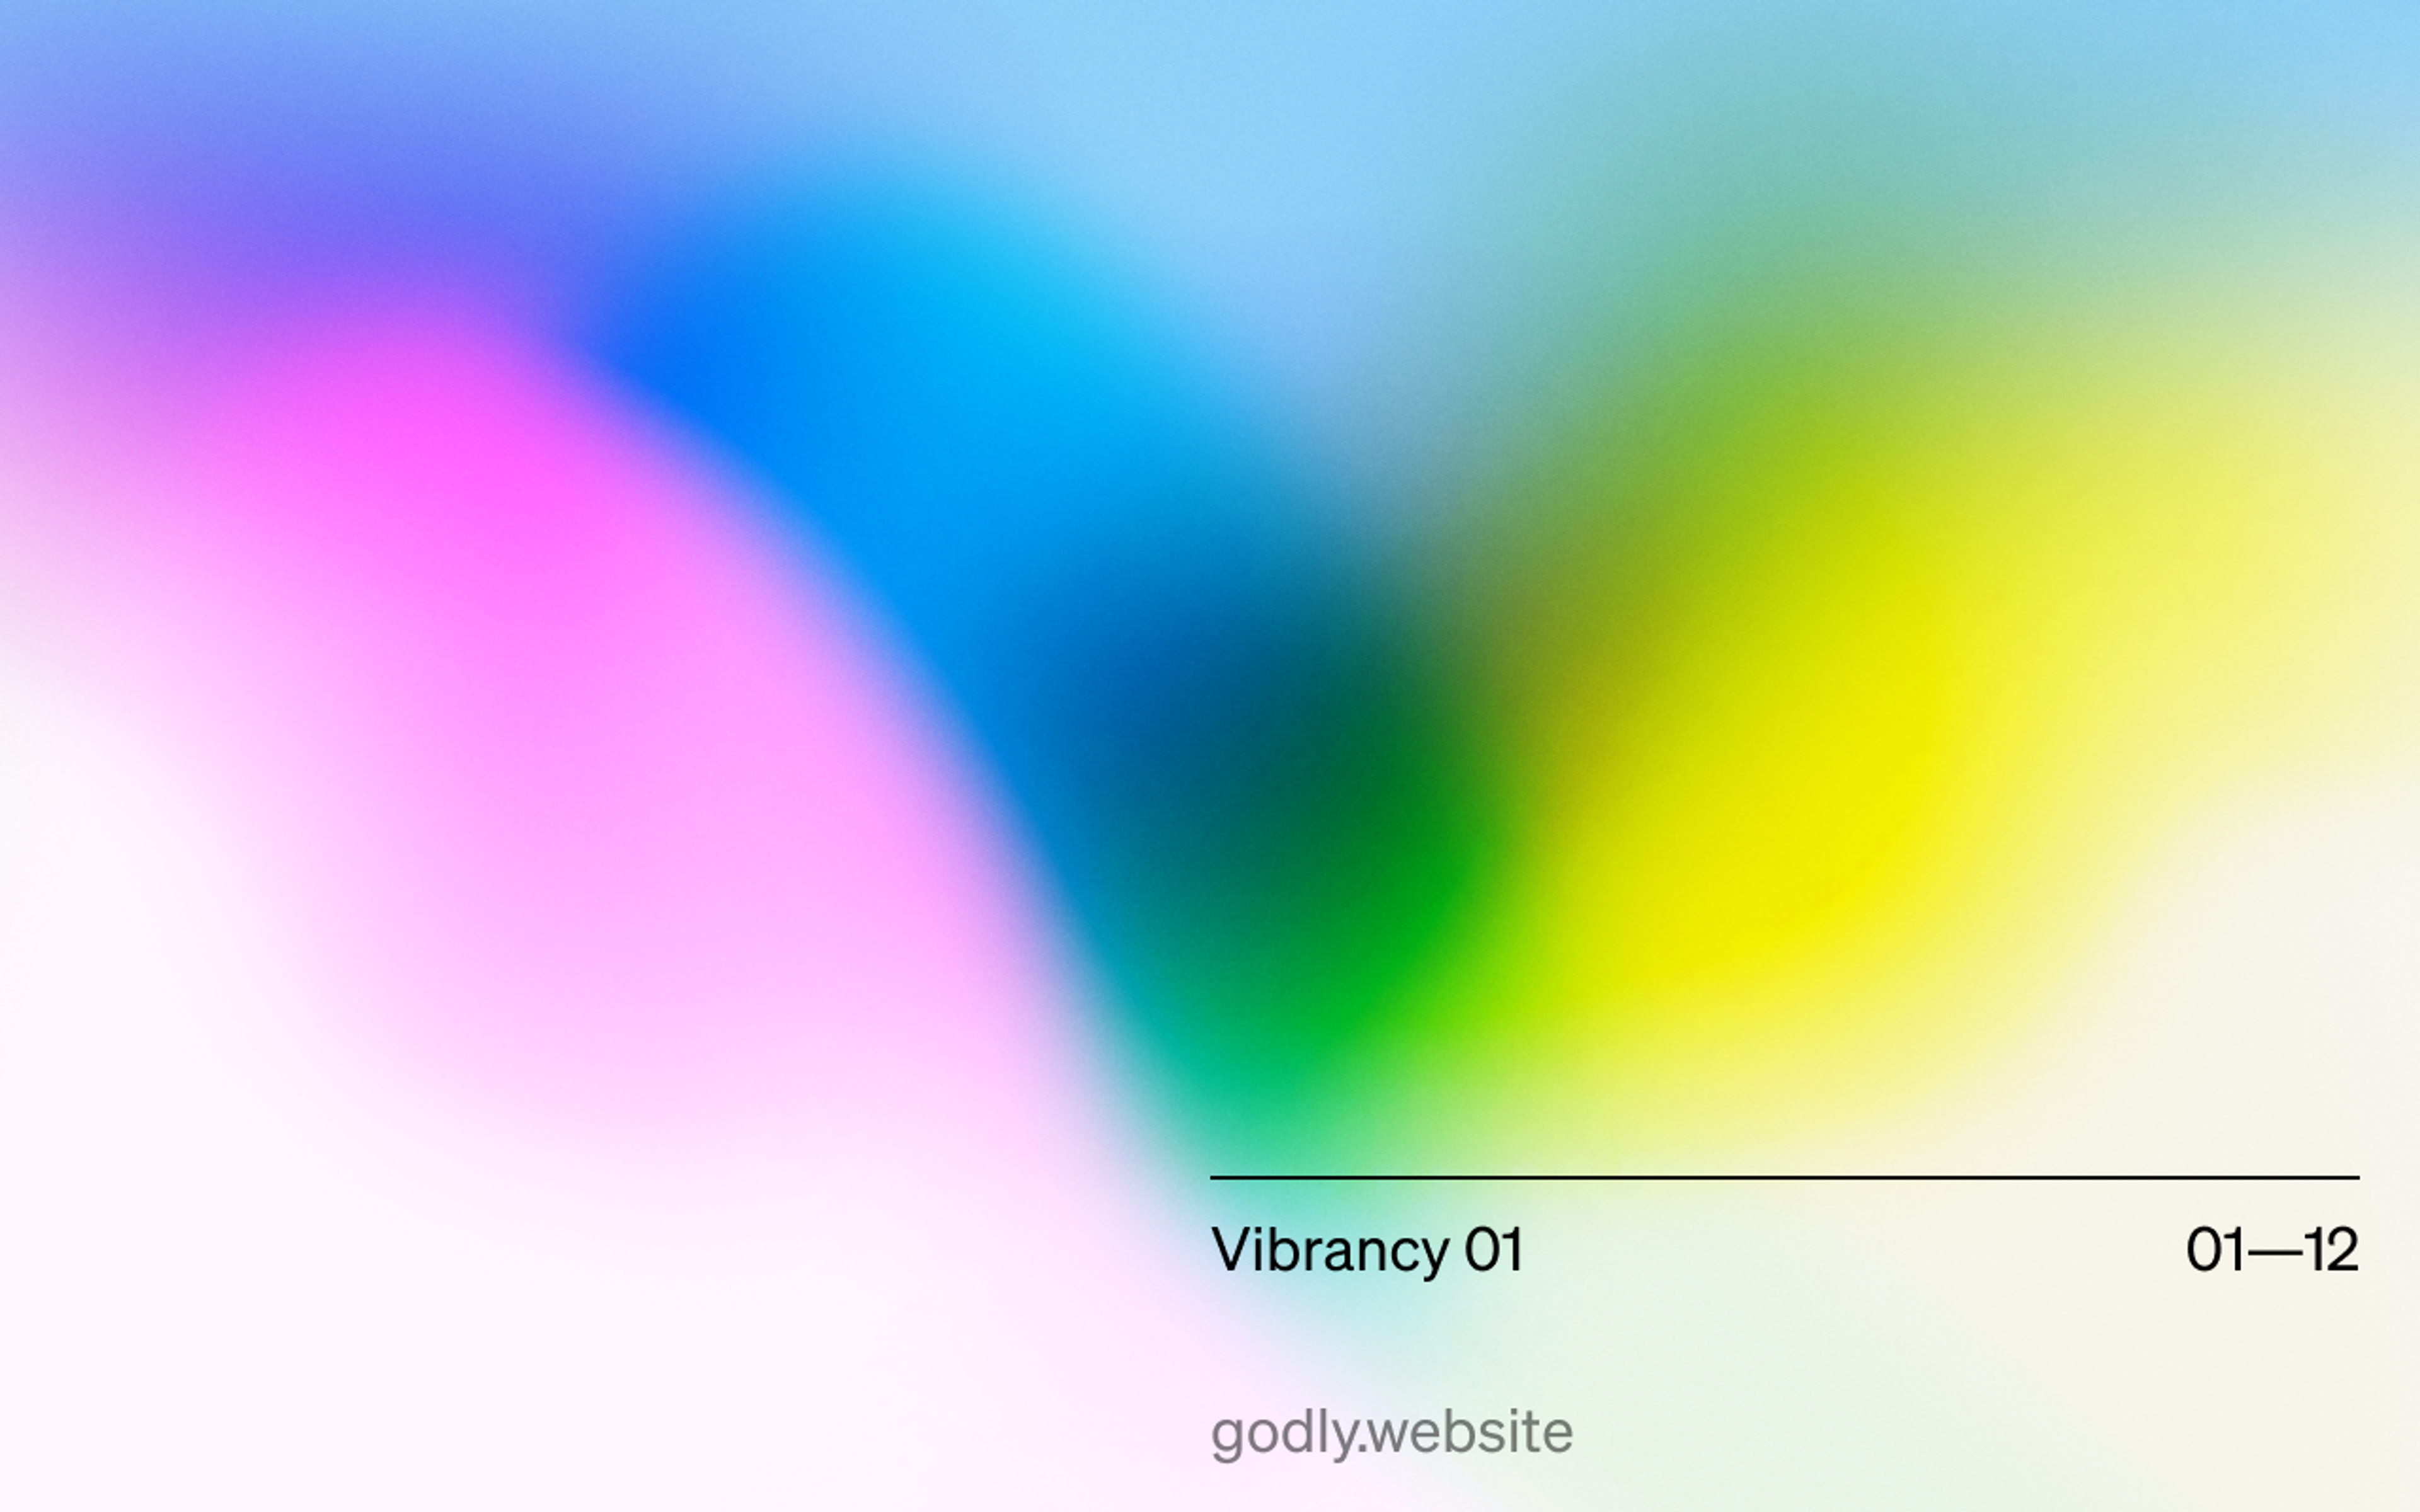 Vibrancy 01 01-12